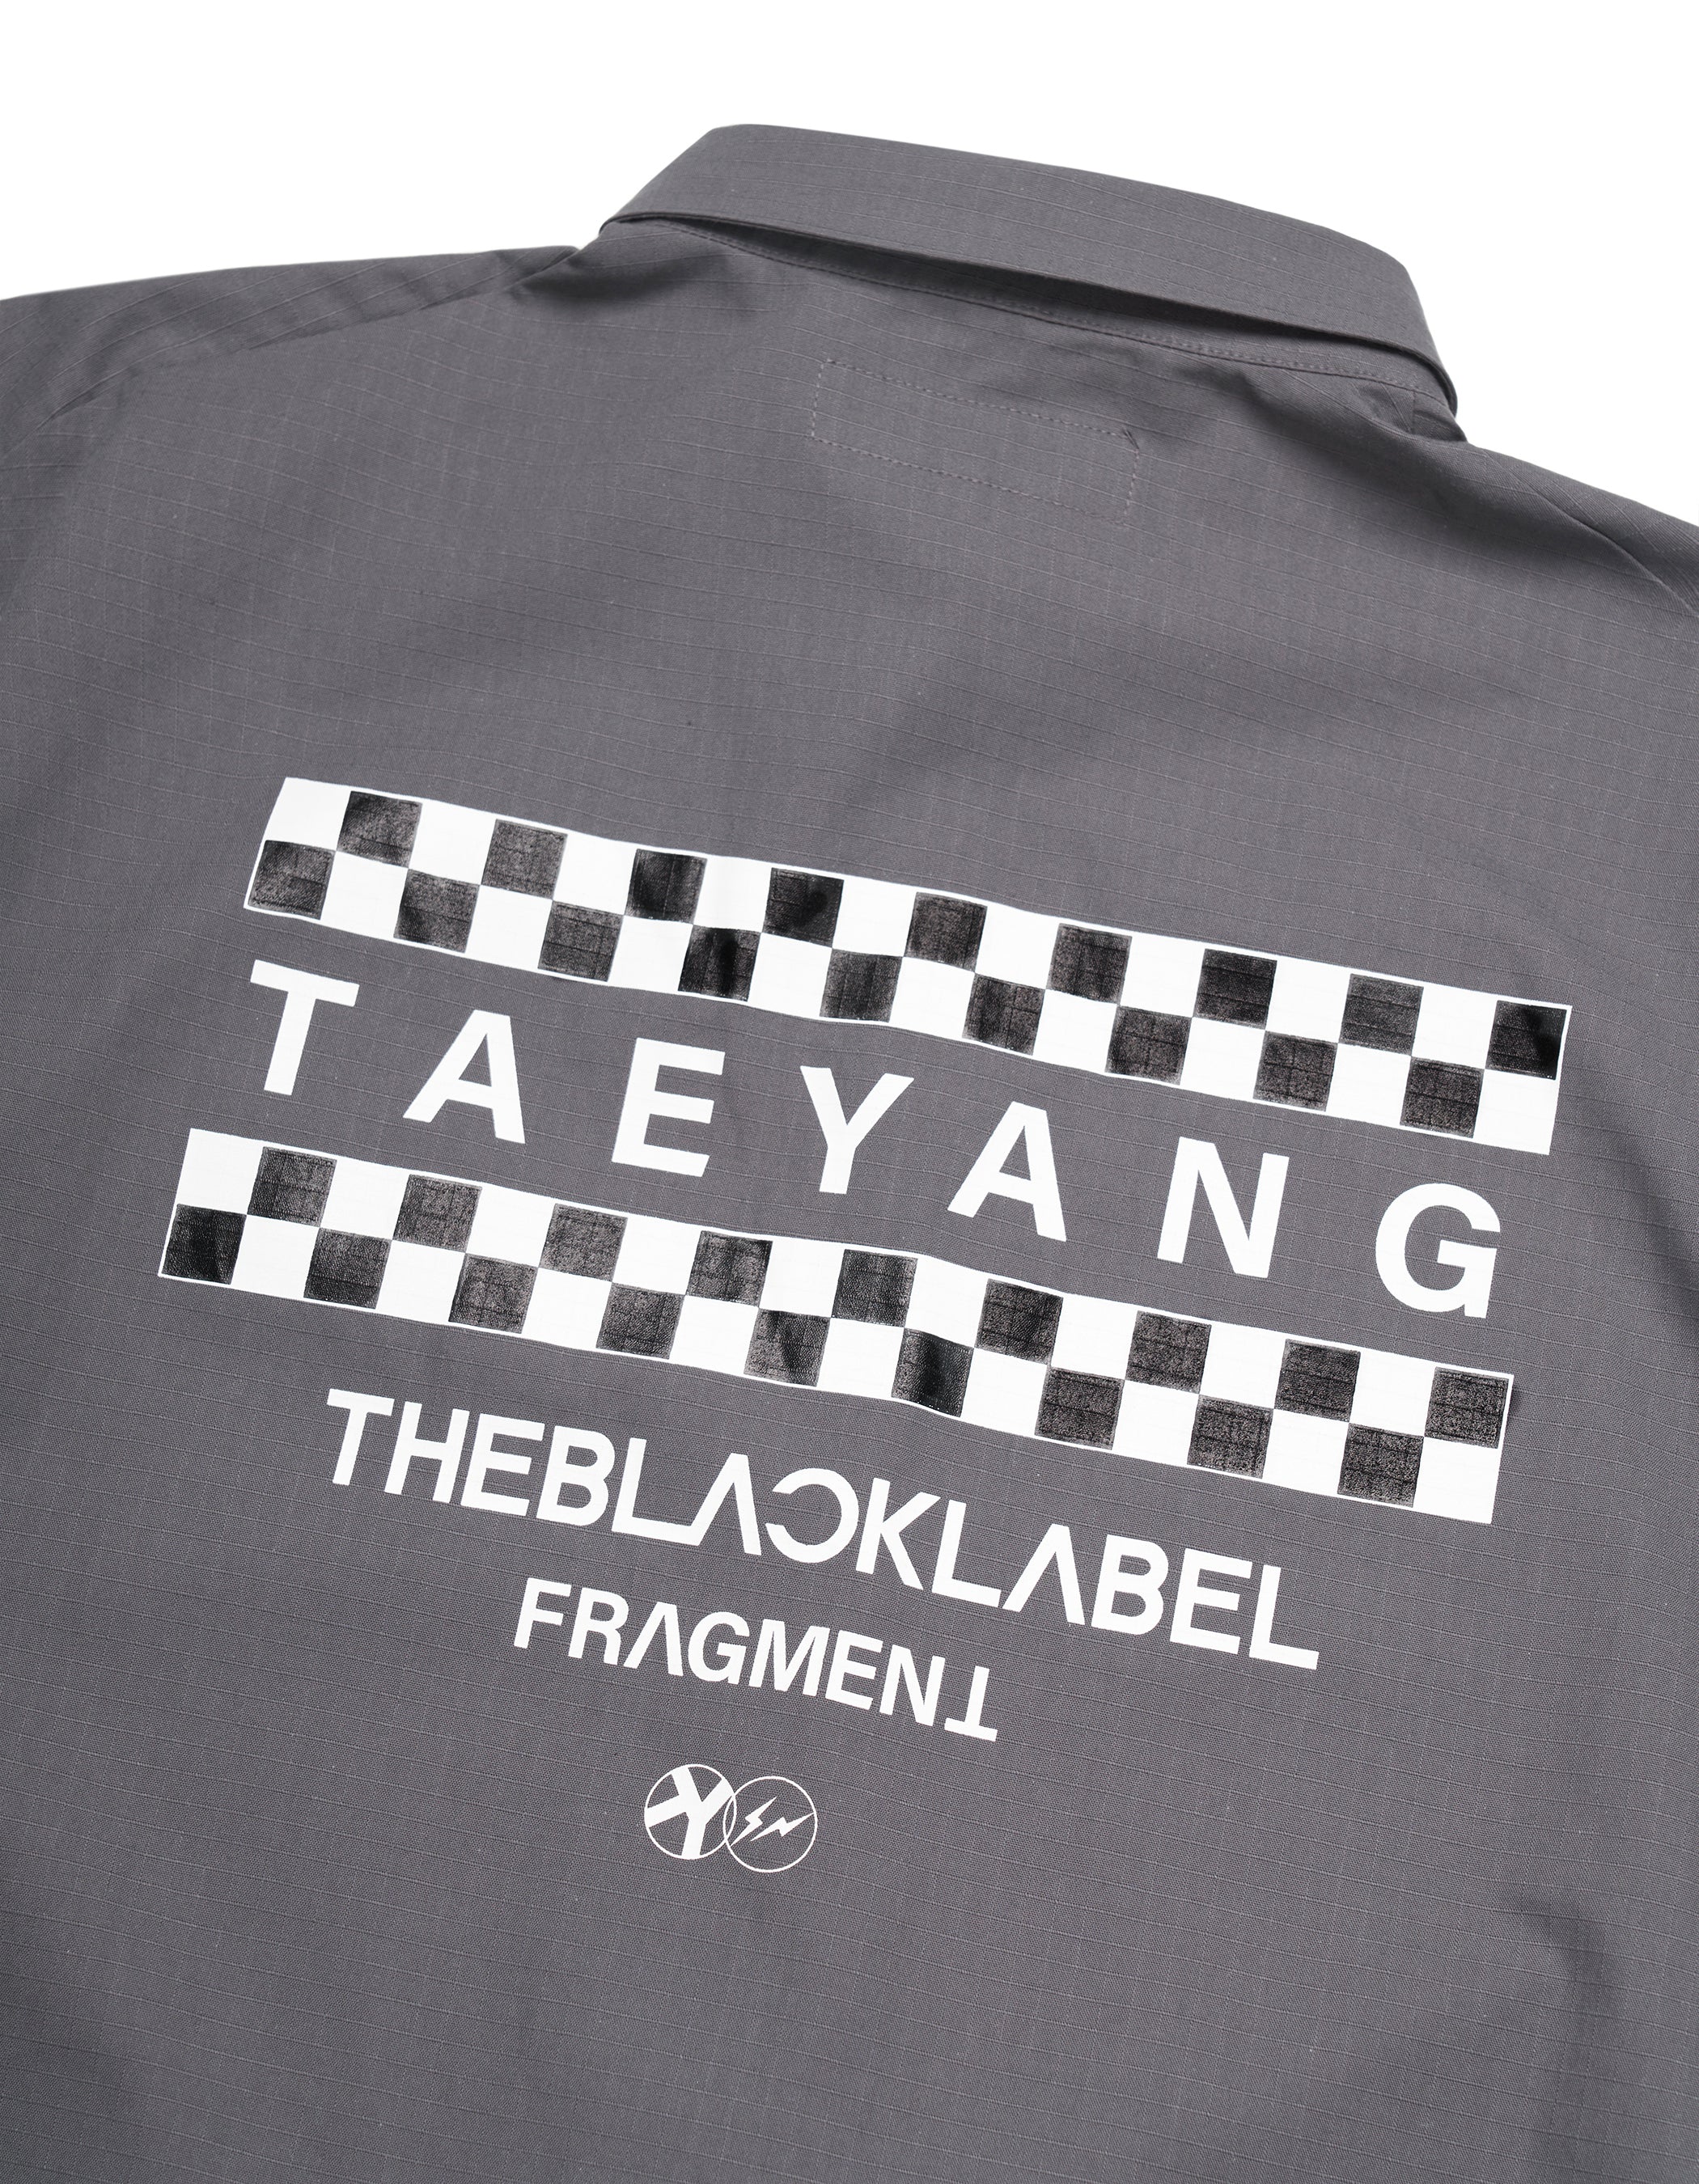 TAEYANG x Fragment Design Shoong! Work Shirt Back Detail